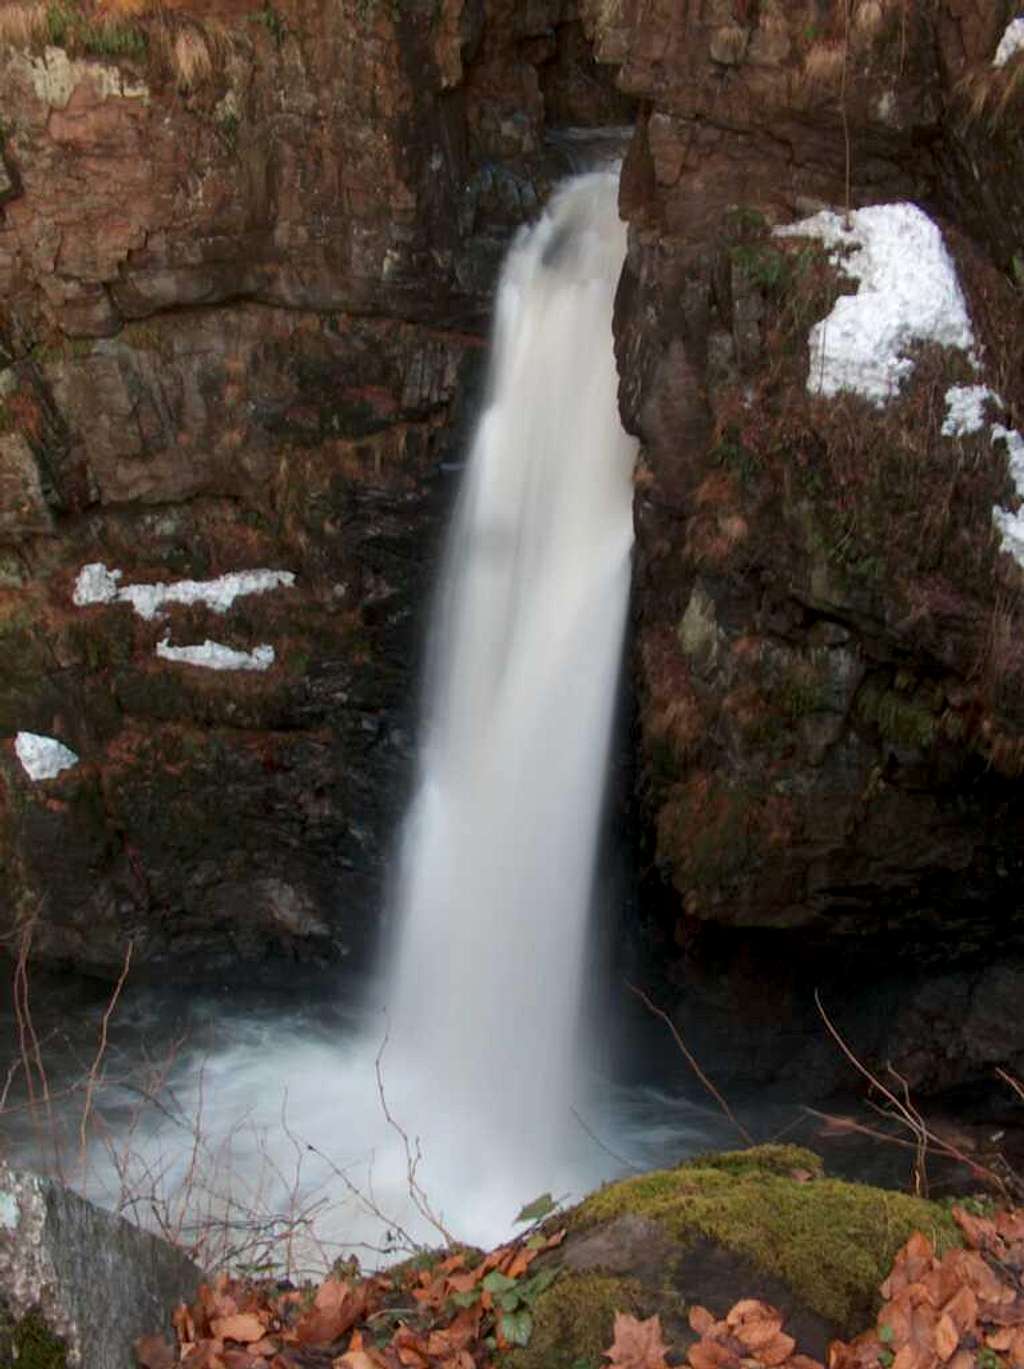 Wodospad Wilczki, one of the tallest in the Sudety, in Międzygórze , on the foot of Śnieżnik